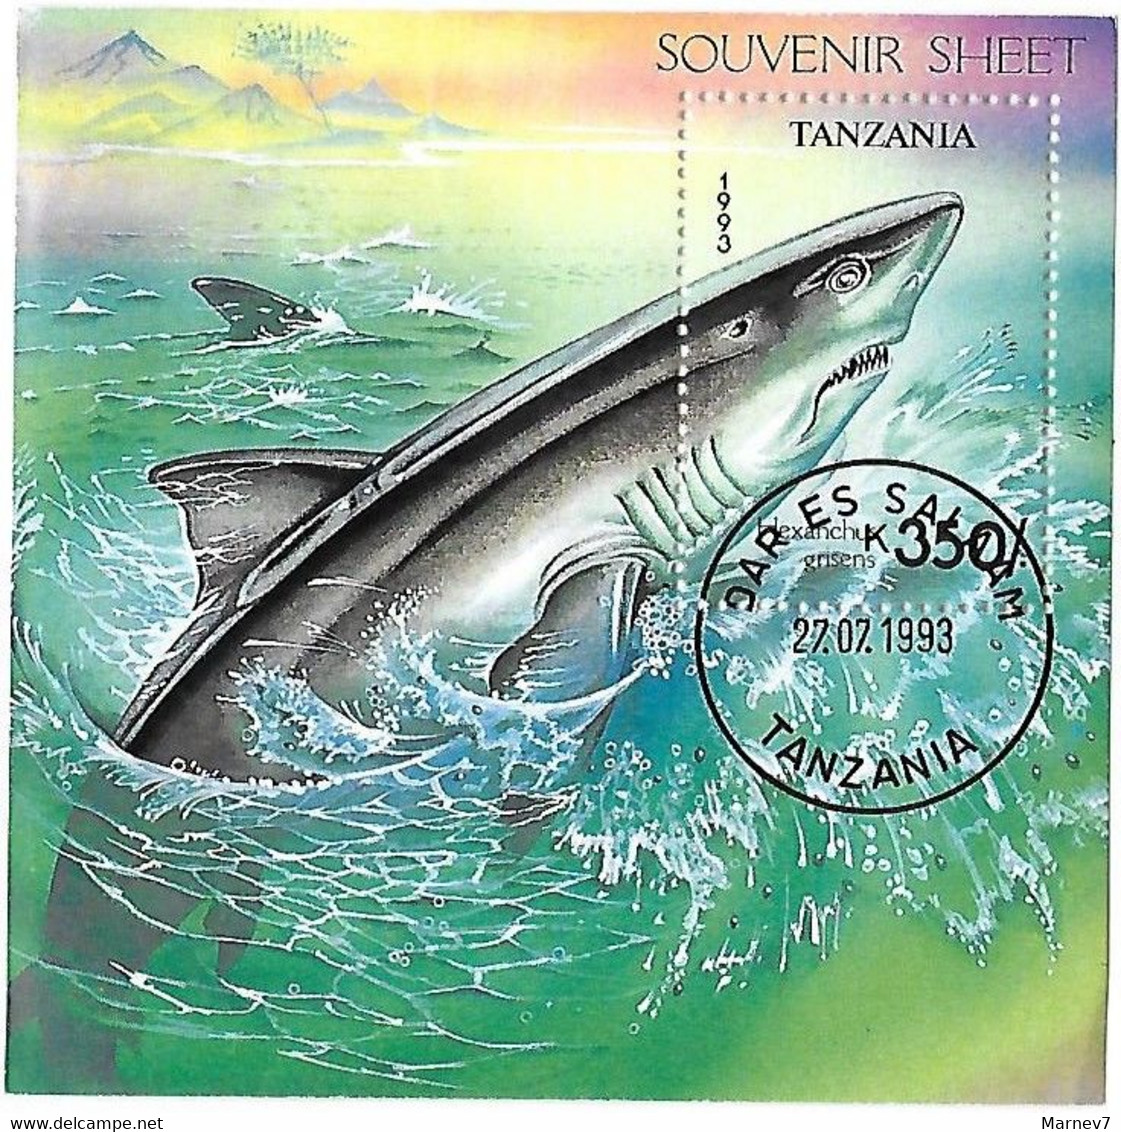 TANZANIE Tanzania - Souvenir Sheet - Requin - Bloc 219 - Cad Dar Es Salam 27 07 1993 - - Tanzanie (1964-...)